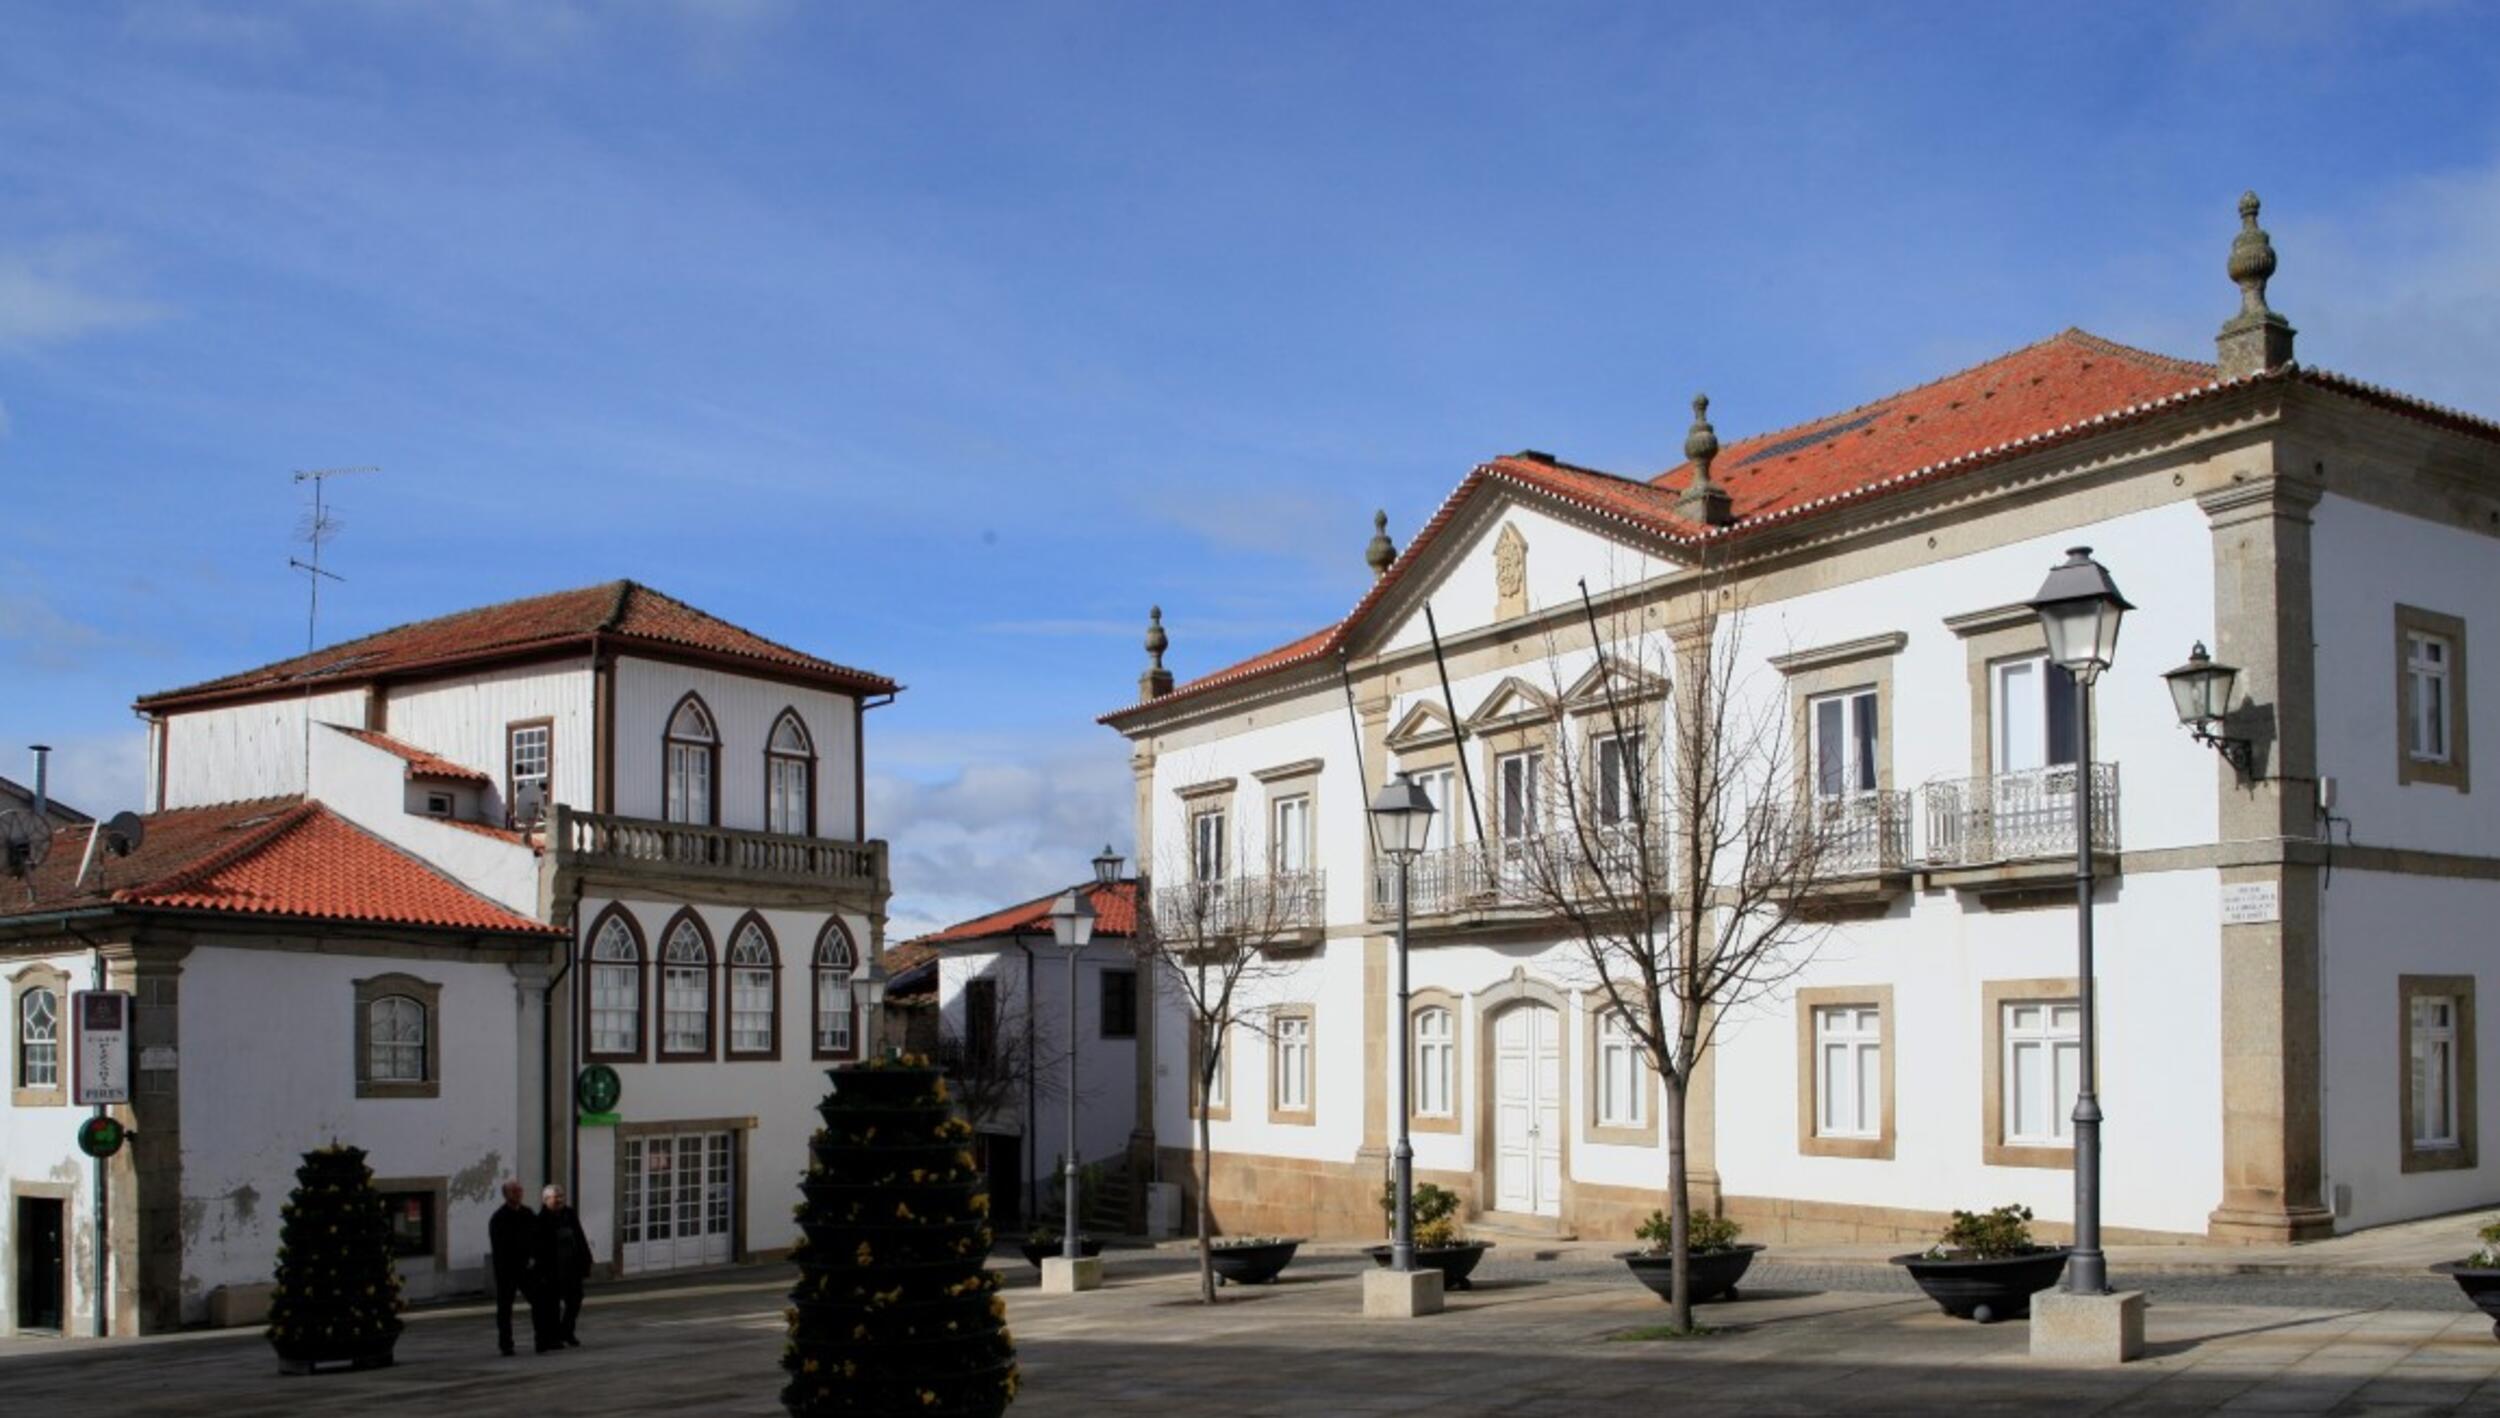 Câmara Municipal de Vimioso